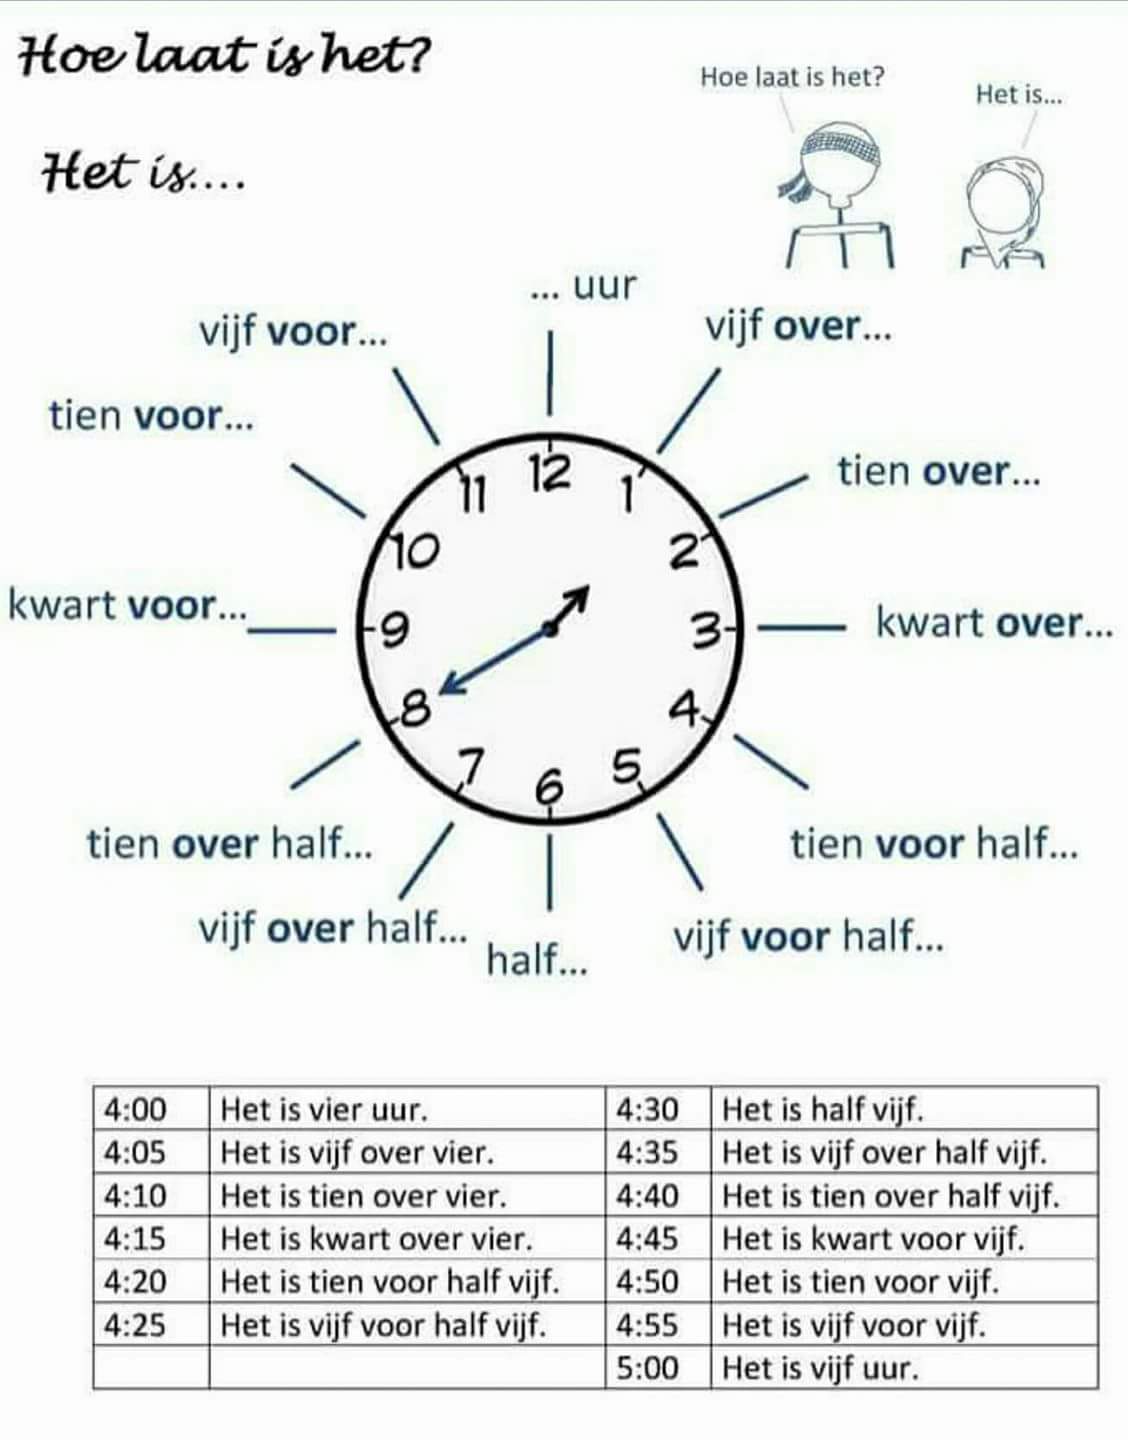 كثير منا يخطئ في الساعة في الهولندي تعلم معنا بسهولة